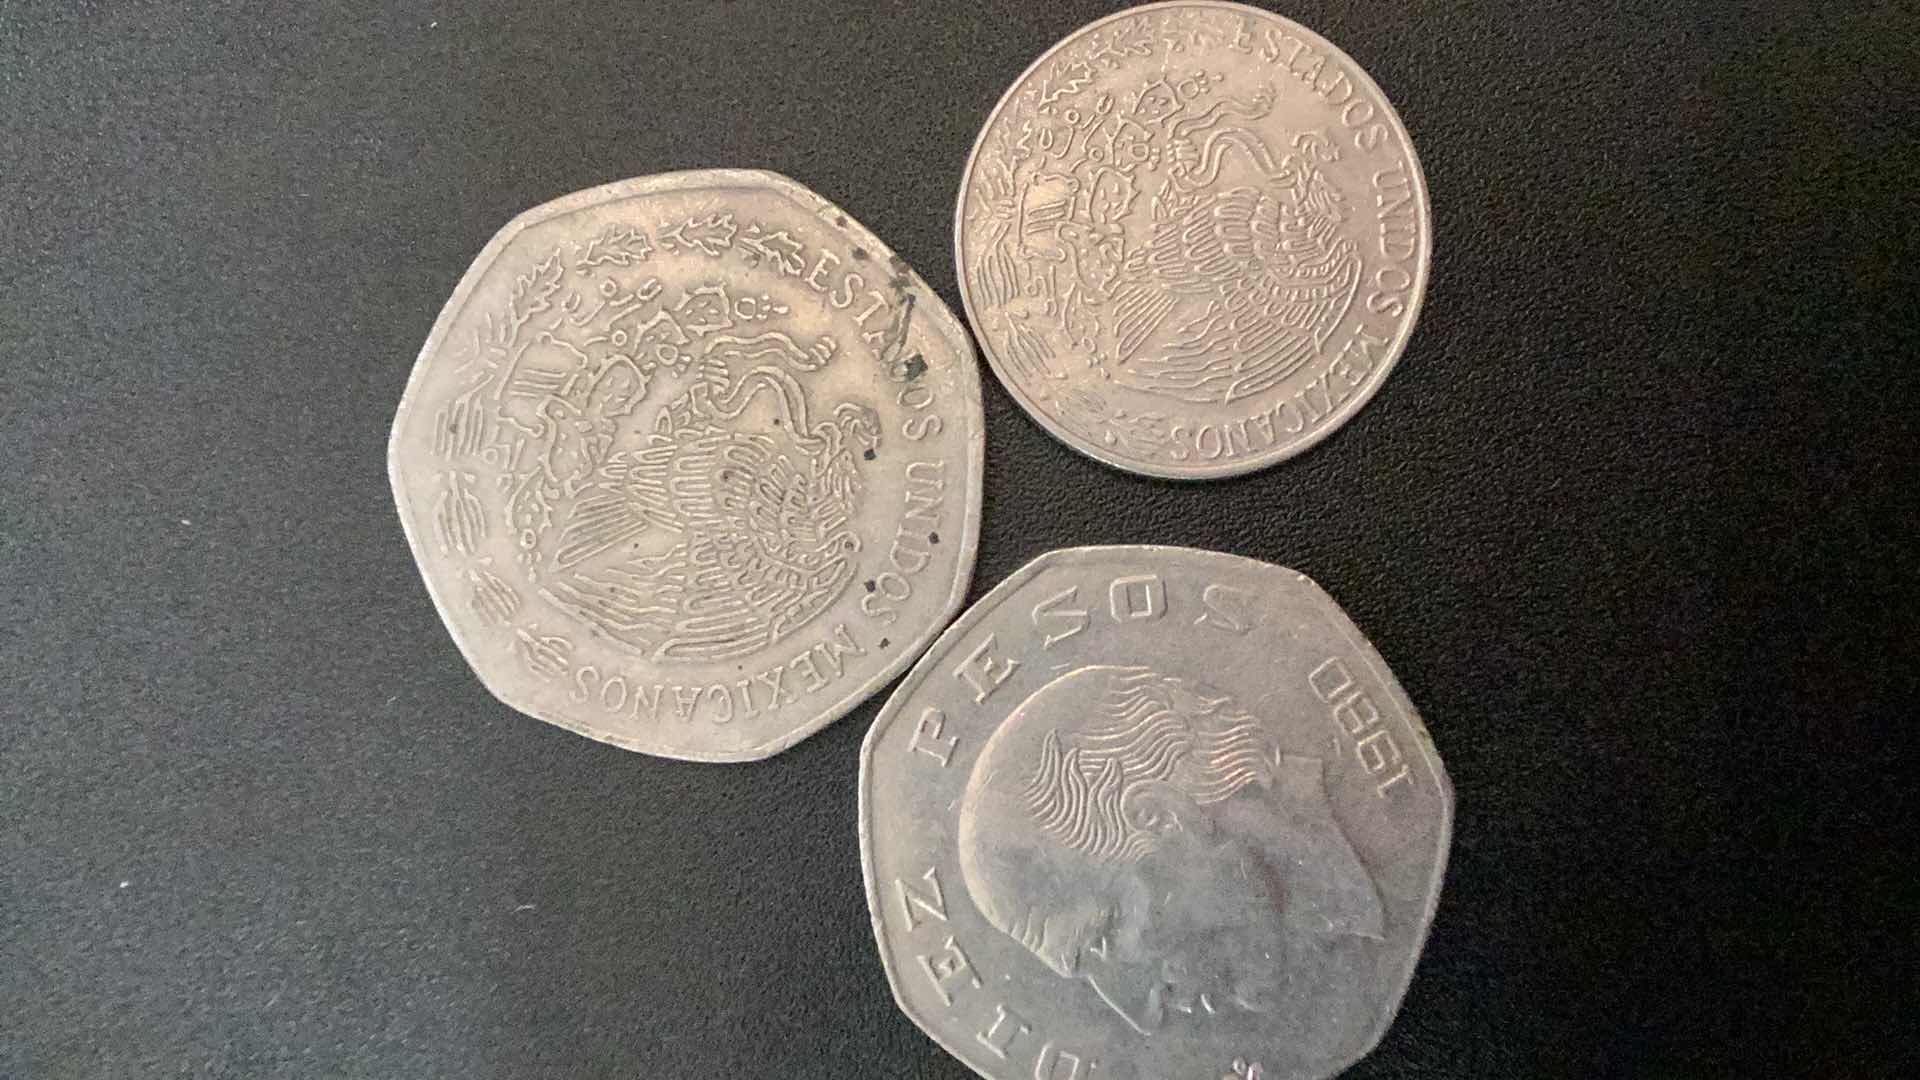 Photo 1 of 3 COLLECTIBLE COINS - ESTADOS UNIDOS MEXICANOS, 1978, 1980, 1980